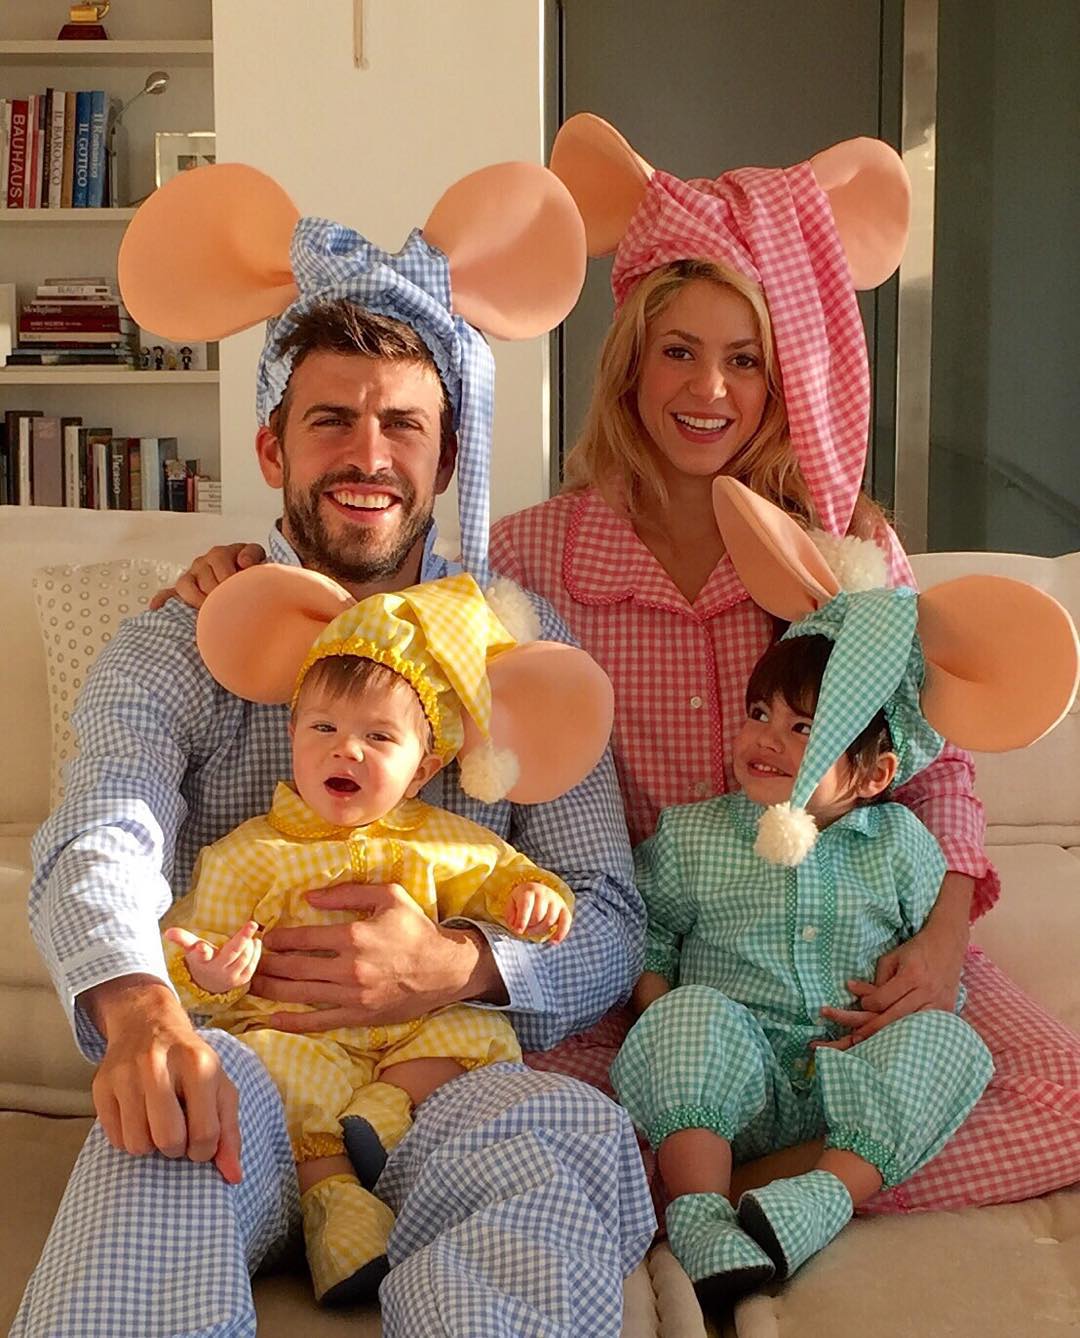 Patinete y bachata, el fin de semana en familia de Piqué, Shakira e hijos